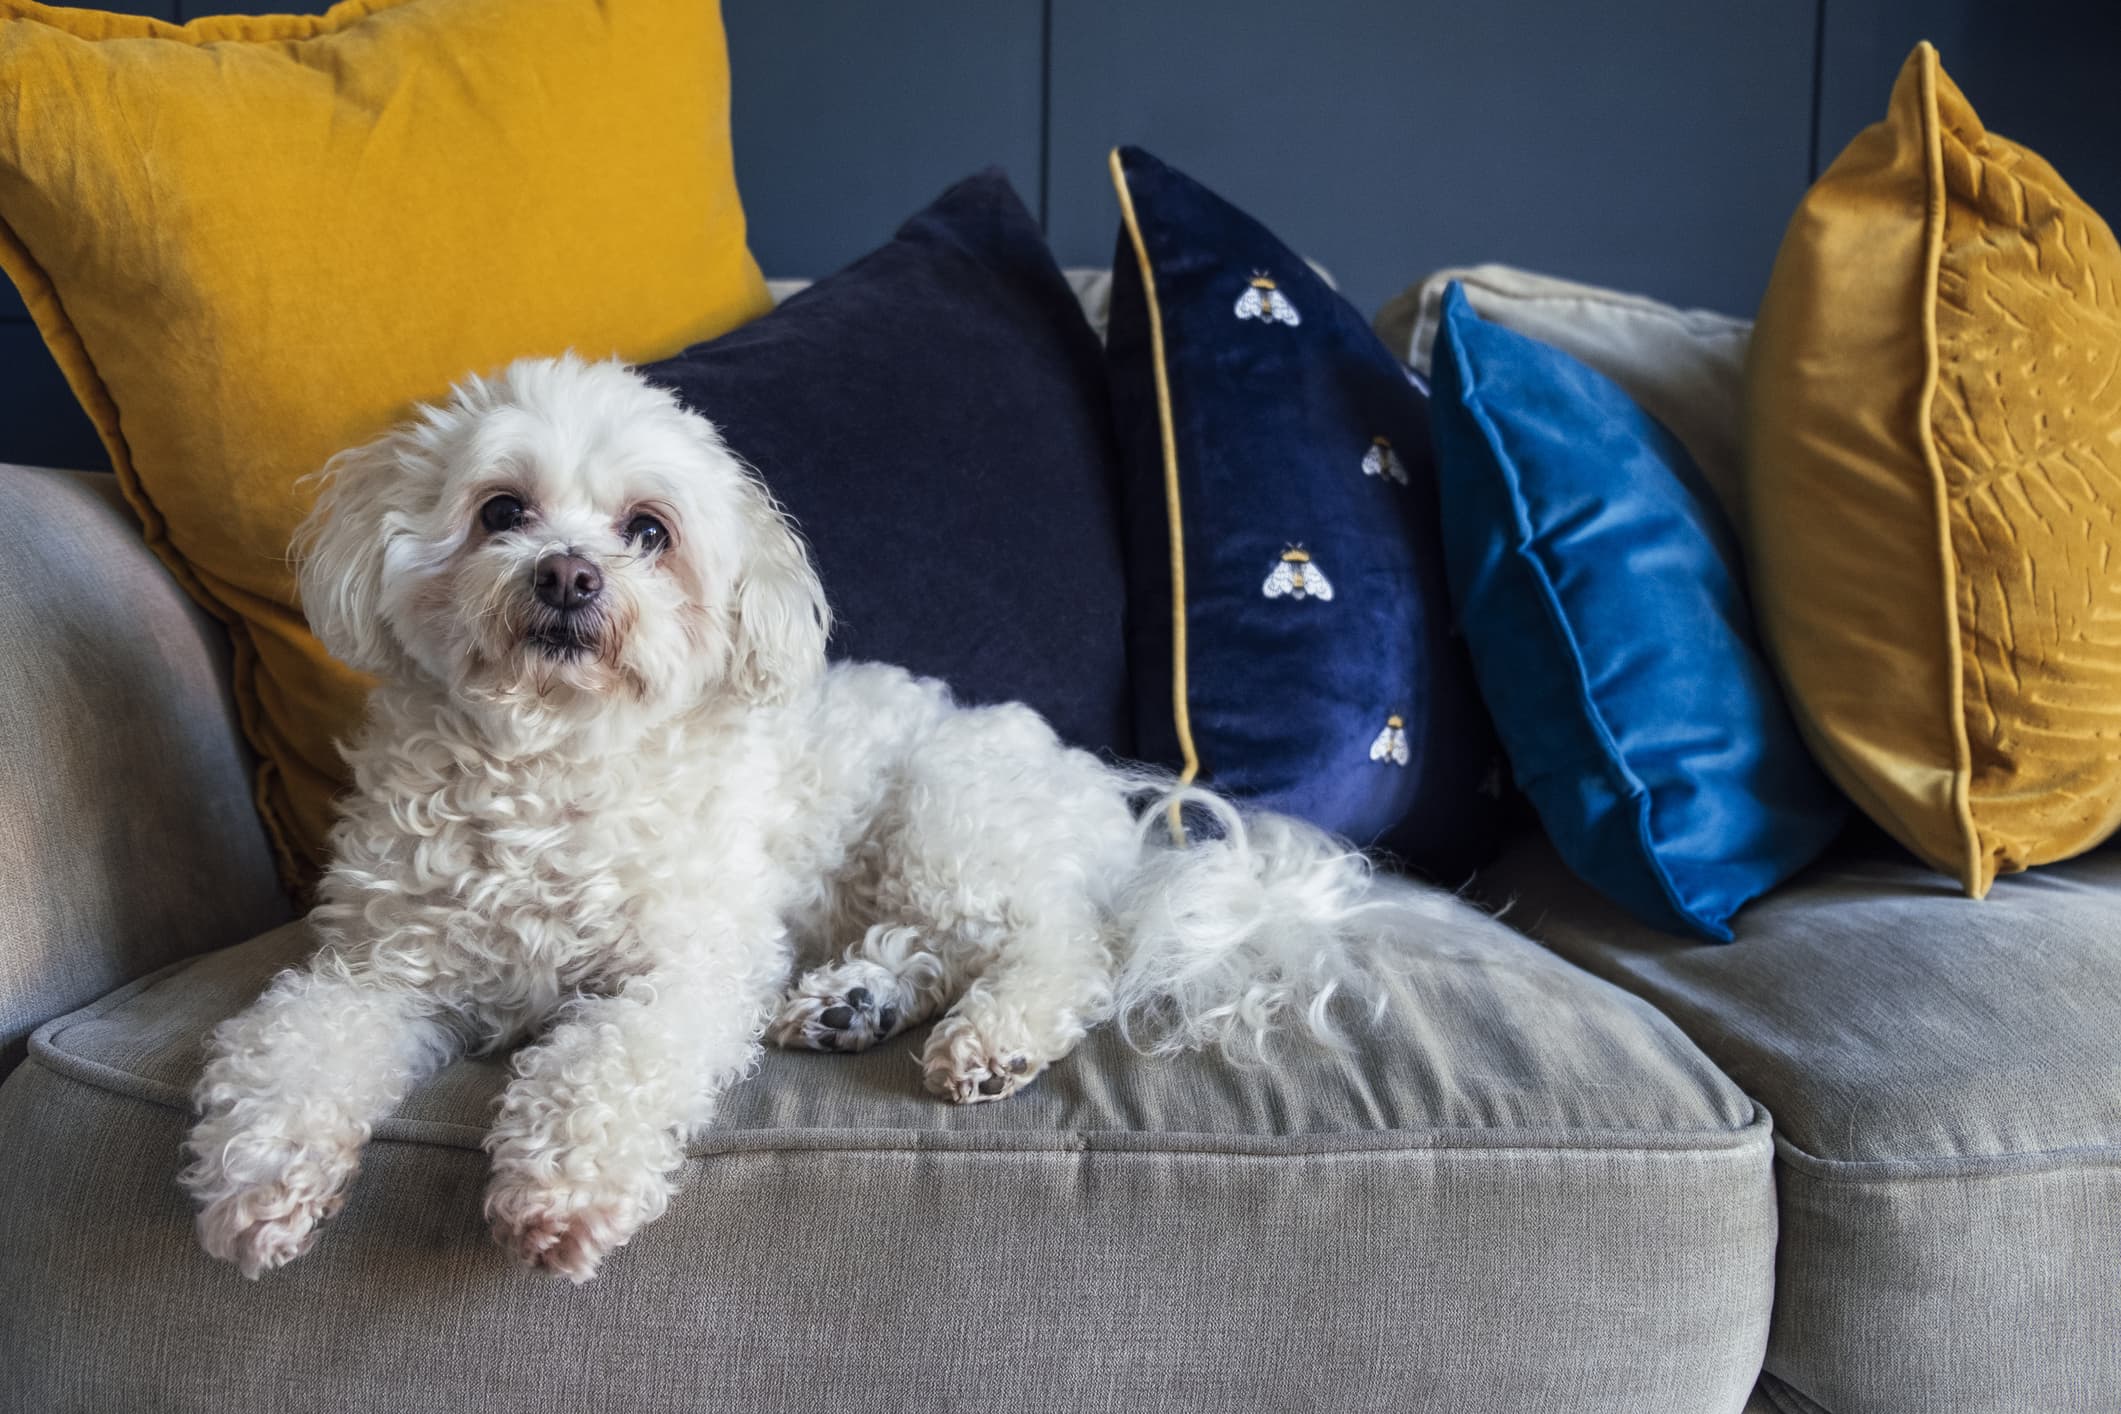 Um cão de pelo branco e olhos escuros, com mancha de lágrima ácida ao redor dos olhos, sentado em um sofá cinza com almofadas de cores azul e amarelo.